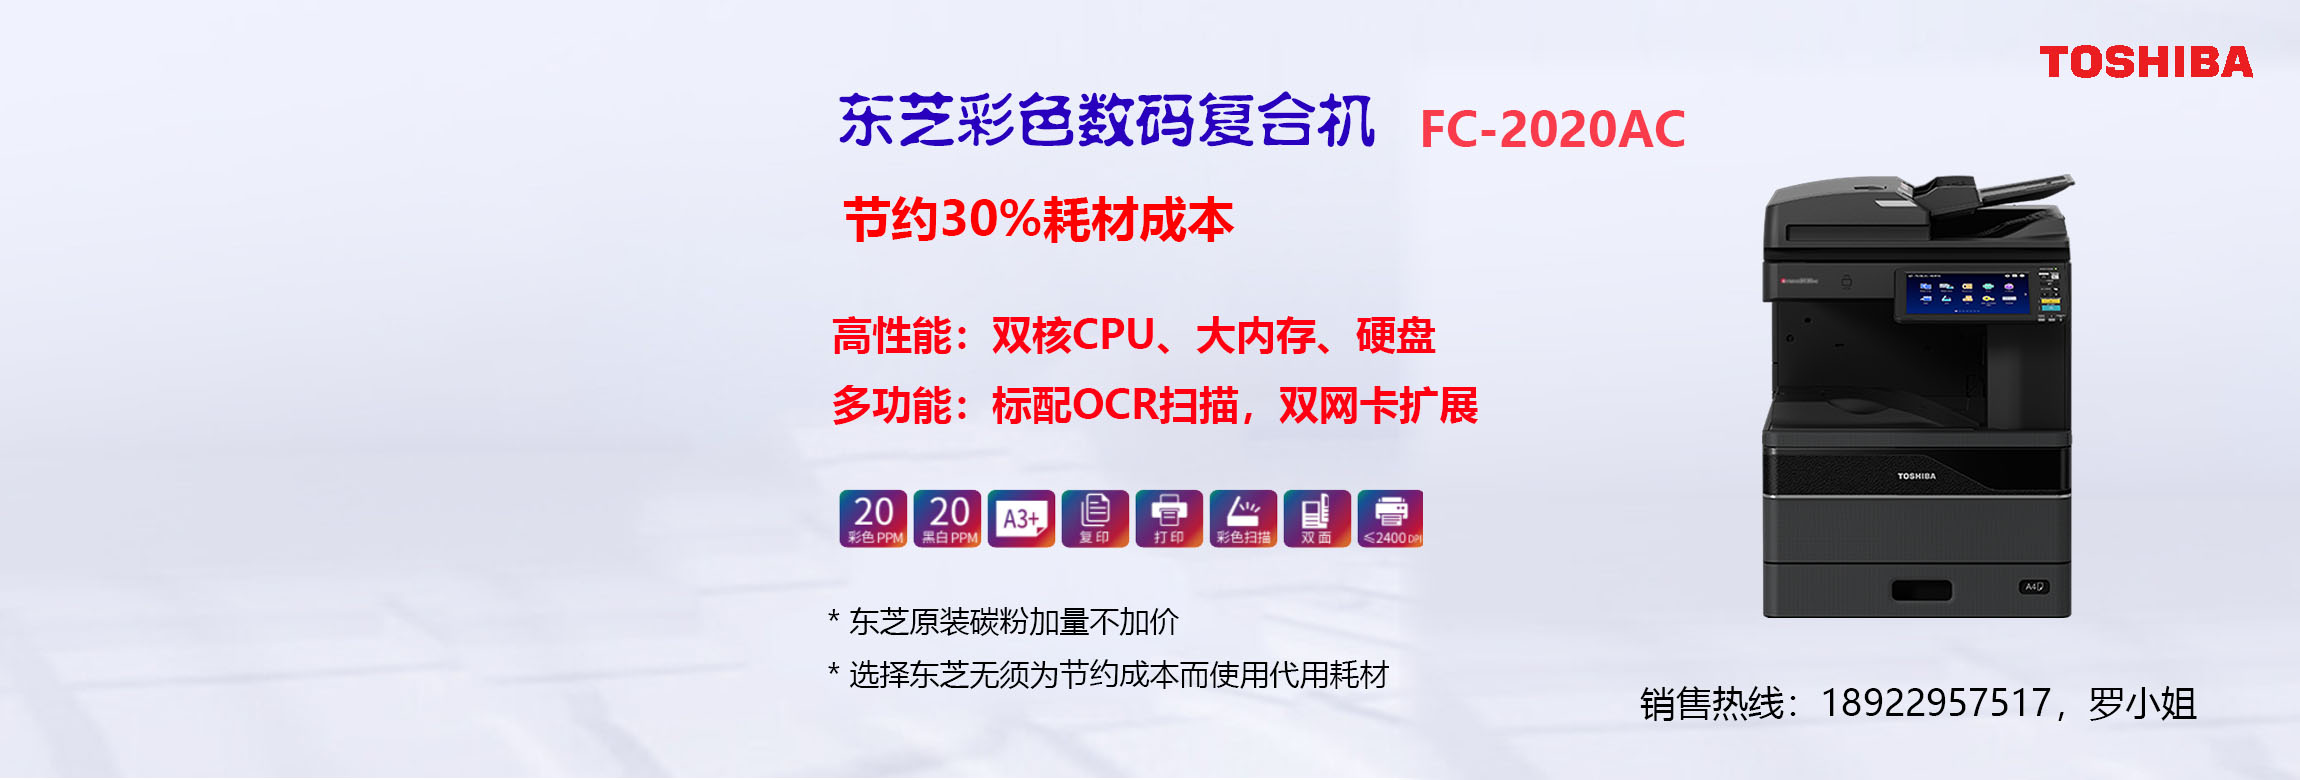 东芝FC2020AC彩』色数码复合机